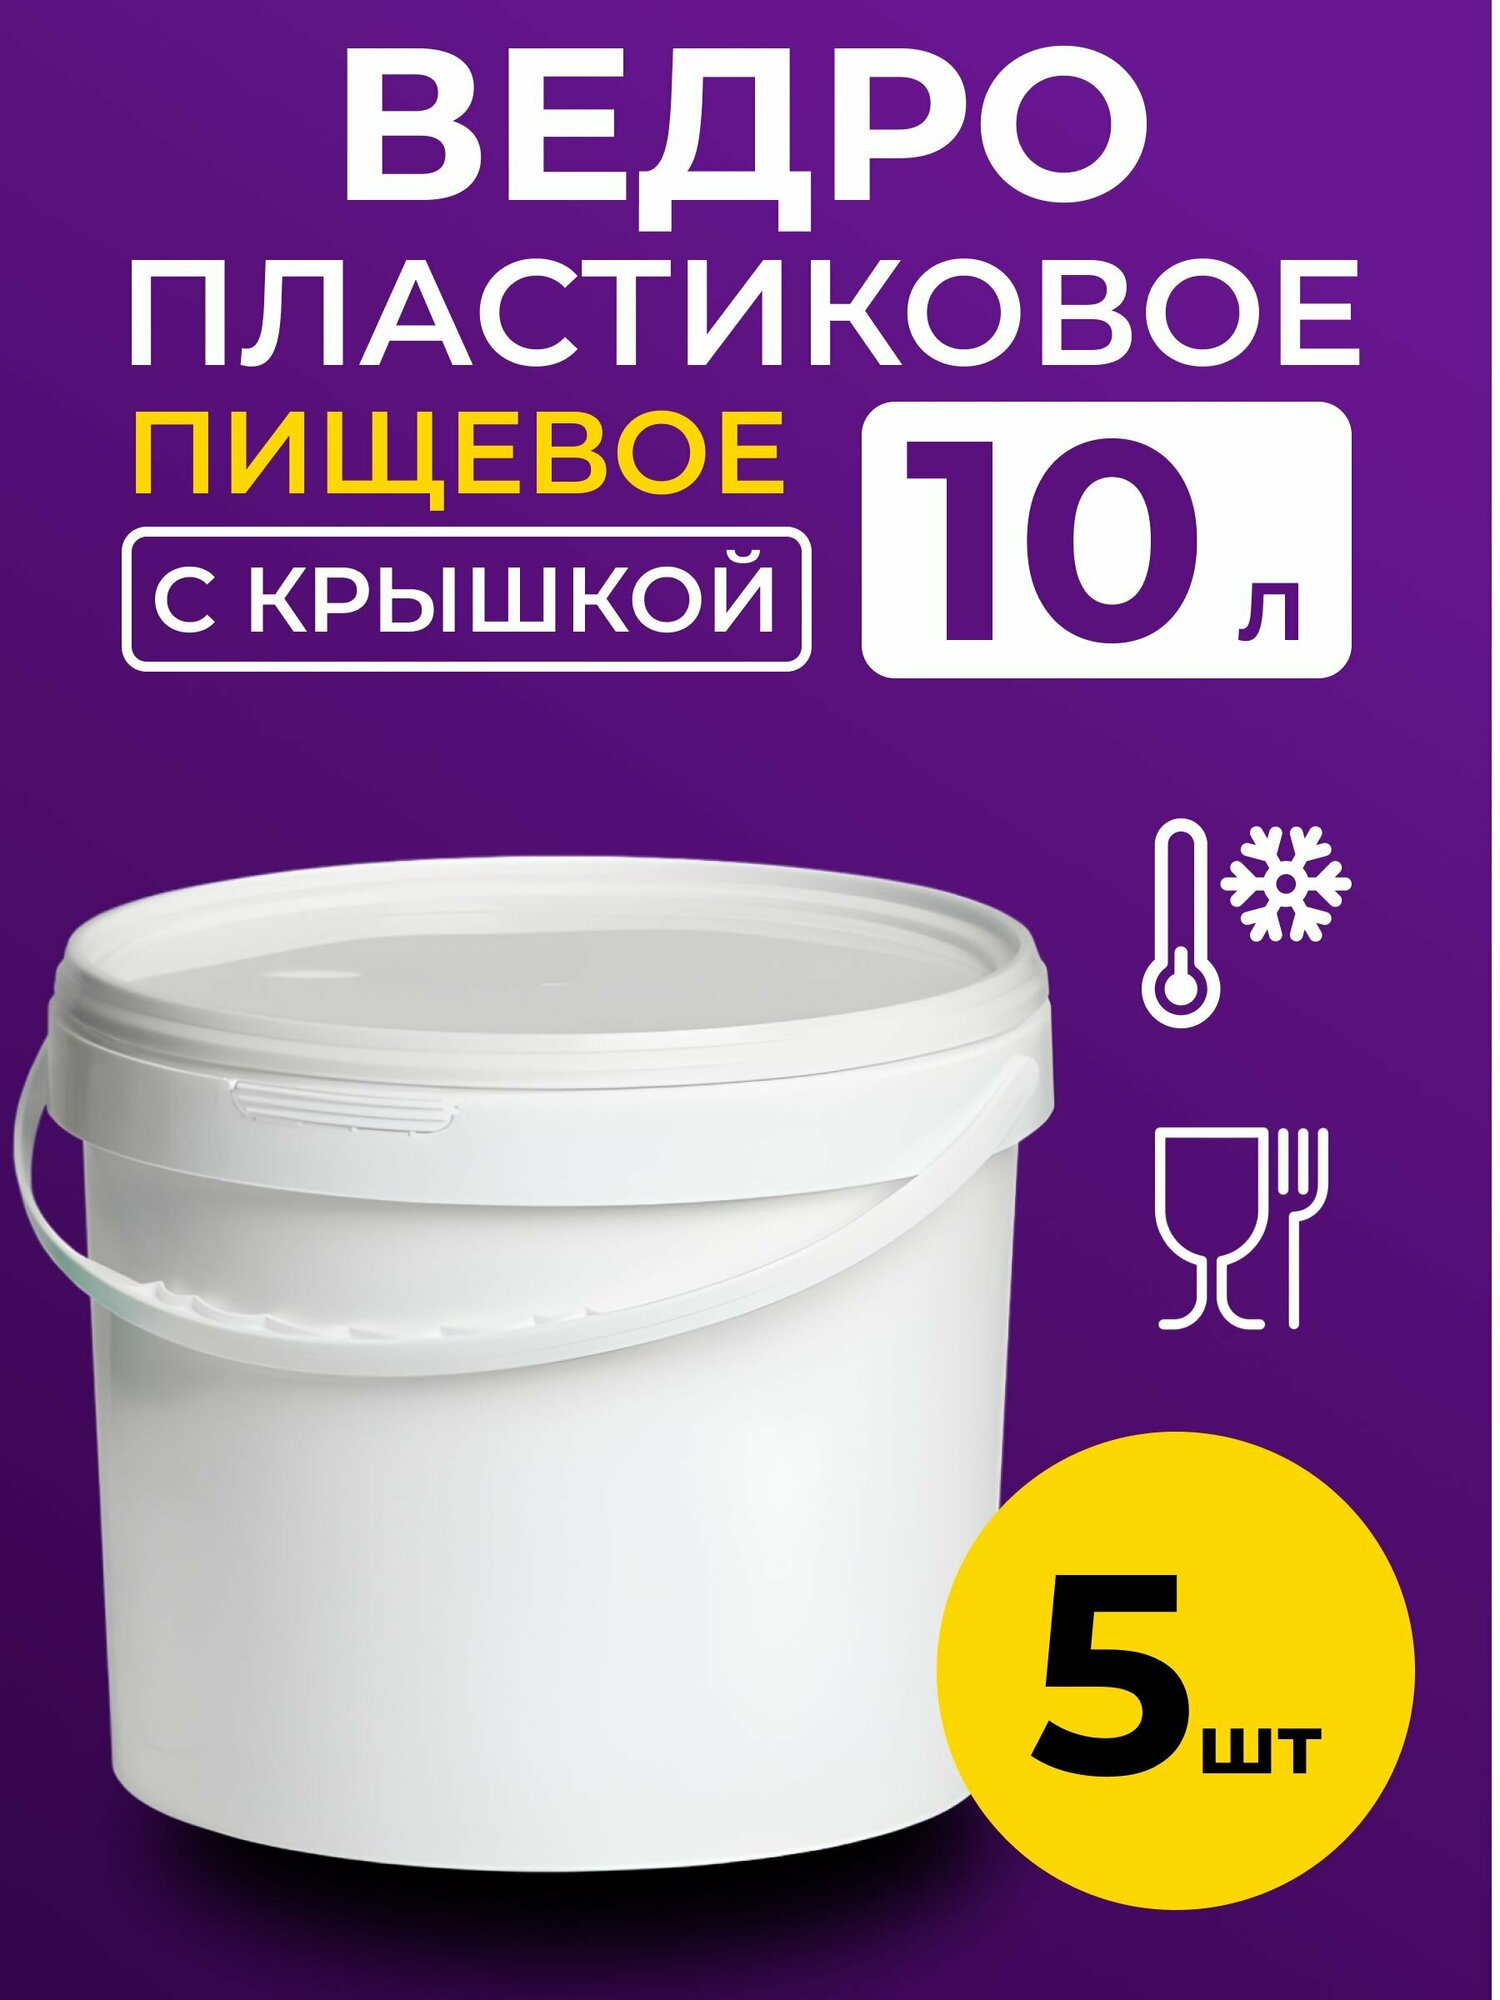 Ведро пластиковое пищевое с крышкой 10л (белое), 5 шт.